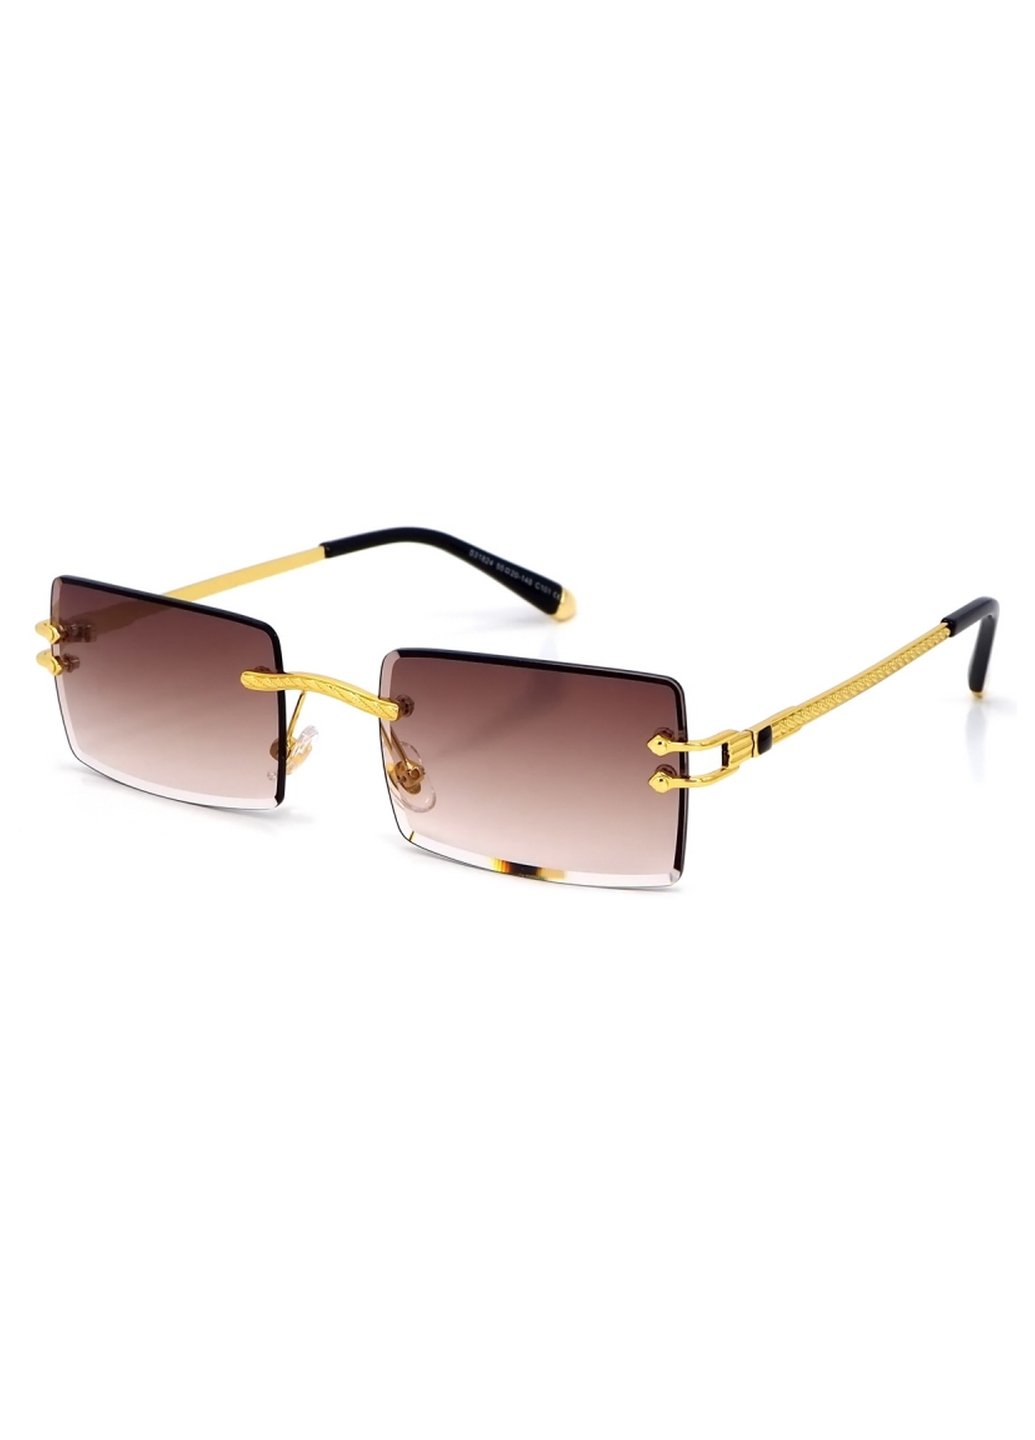 Купить Женские солнцезащитные очки Merlini с поляризацией S31824 117079 - Золотистый в интернет-магазине